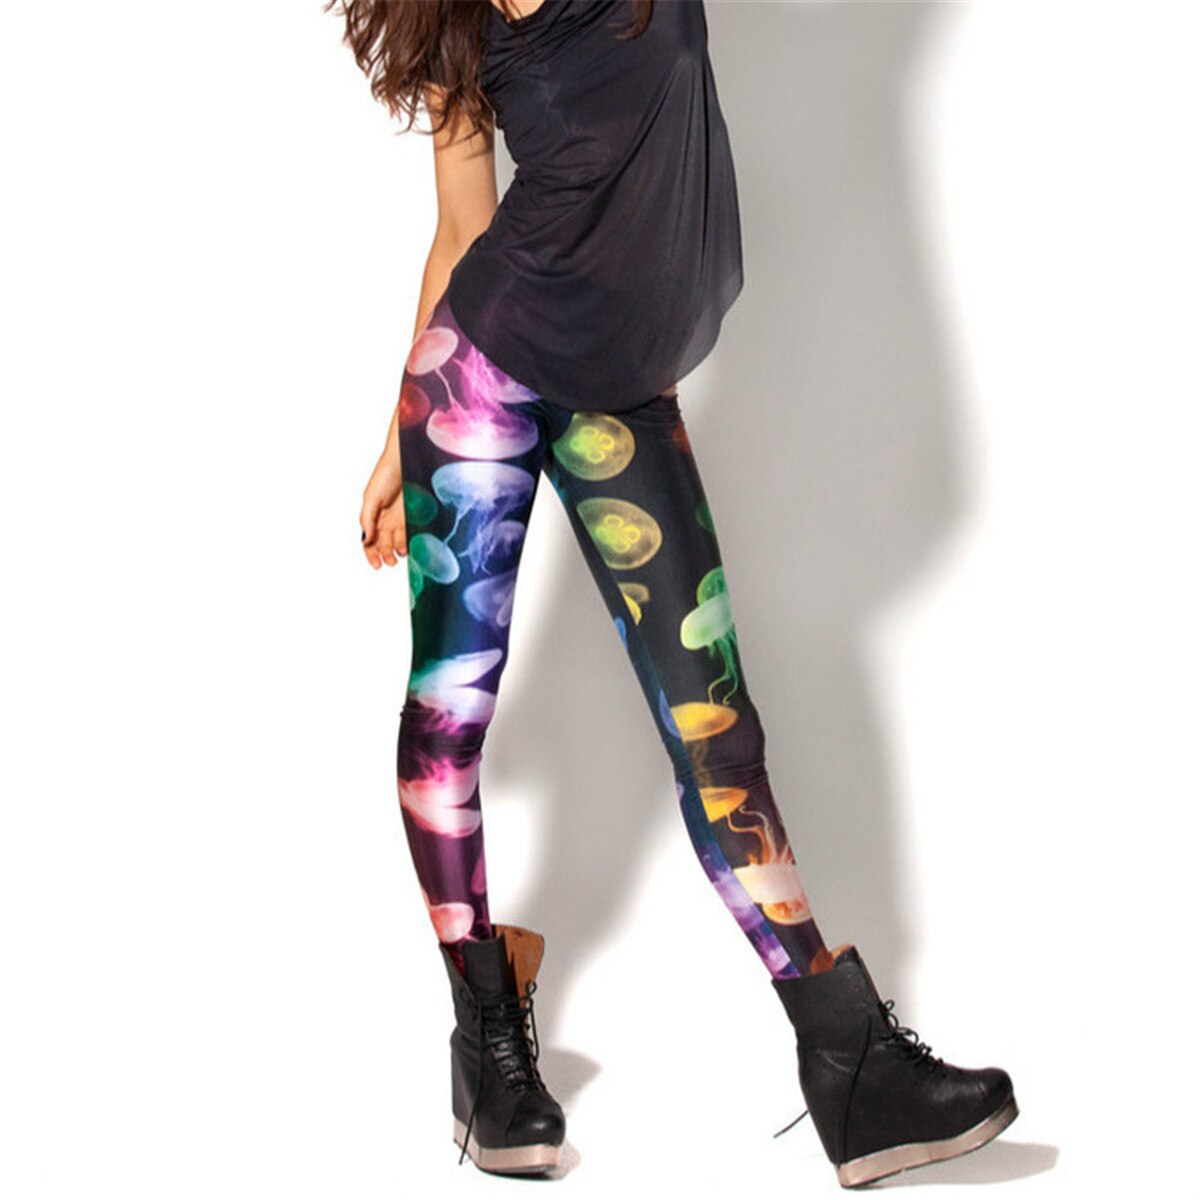 Yoga Pants & Leggings Multi color fantasy jellyfish Digital Print Leggings